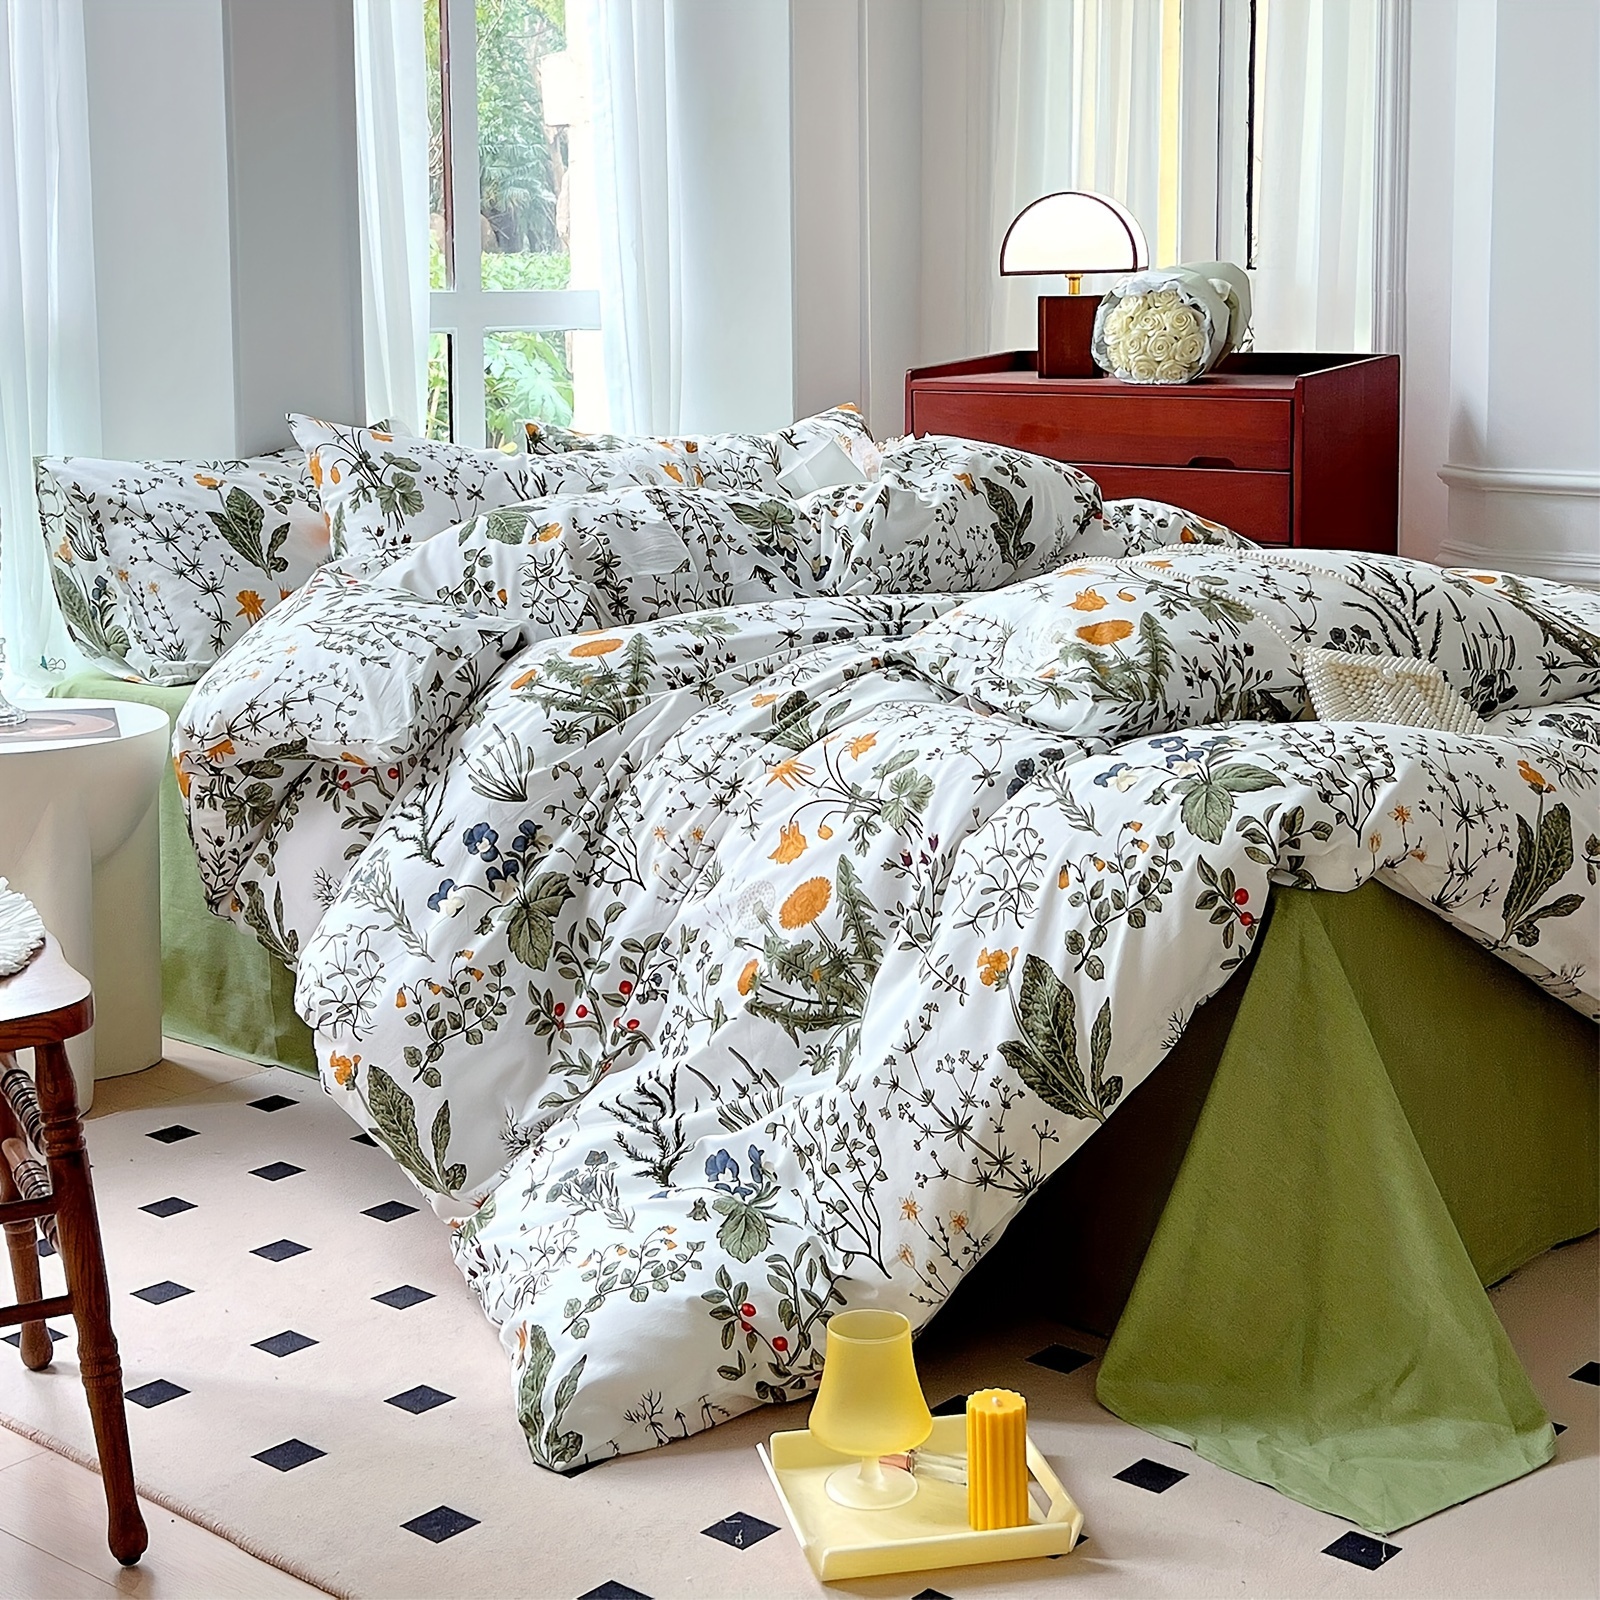 Floral Comforter King Size-100% Cotton Floral Bedding Comforter